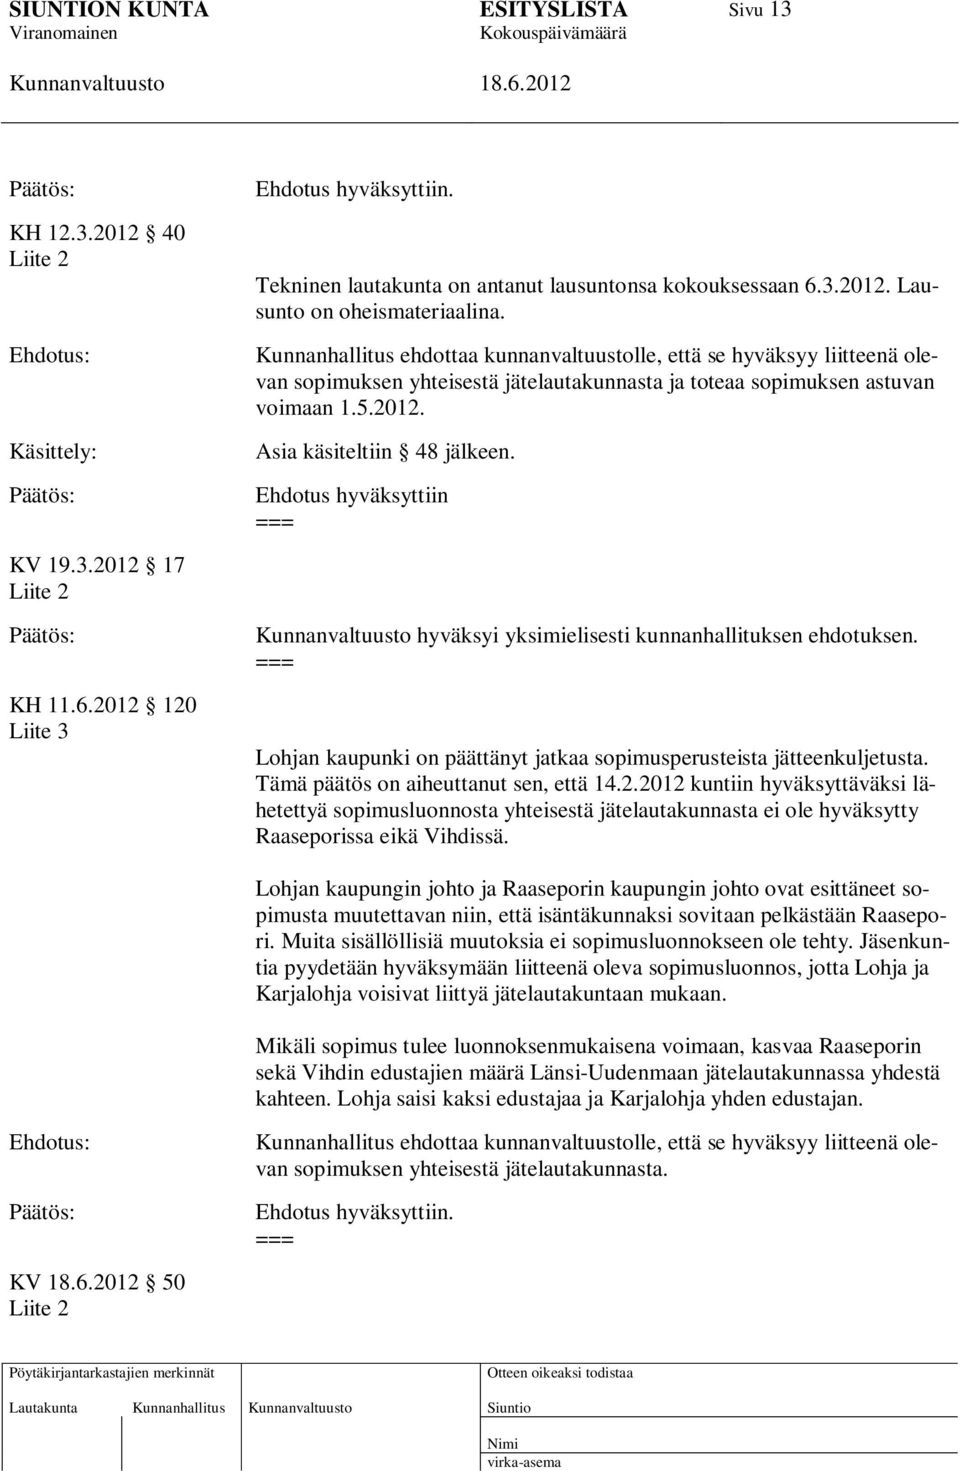 Ehdotus hyväksyttiin KV 19.3.2012 17 Liite 2 KH 11.6.2012 120 Liite 3 hyväksyi yksimielisesti kunnanhallituksen ehdotuksen. Lohjan kaupunki on päättänyt jatkaa sopimusperusteista jätteenkuljetusta.